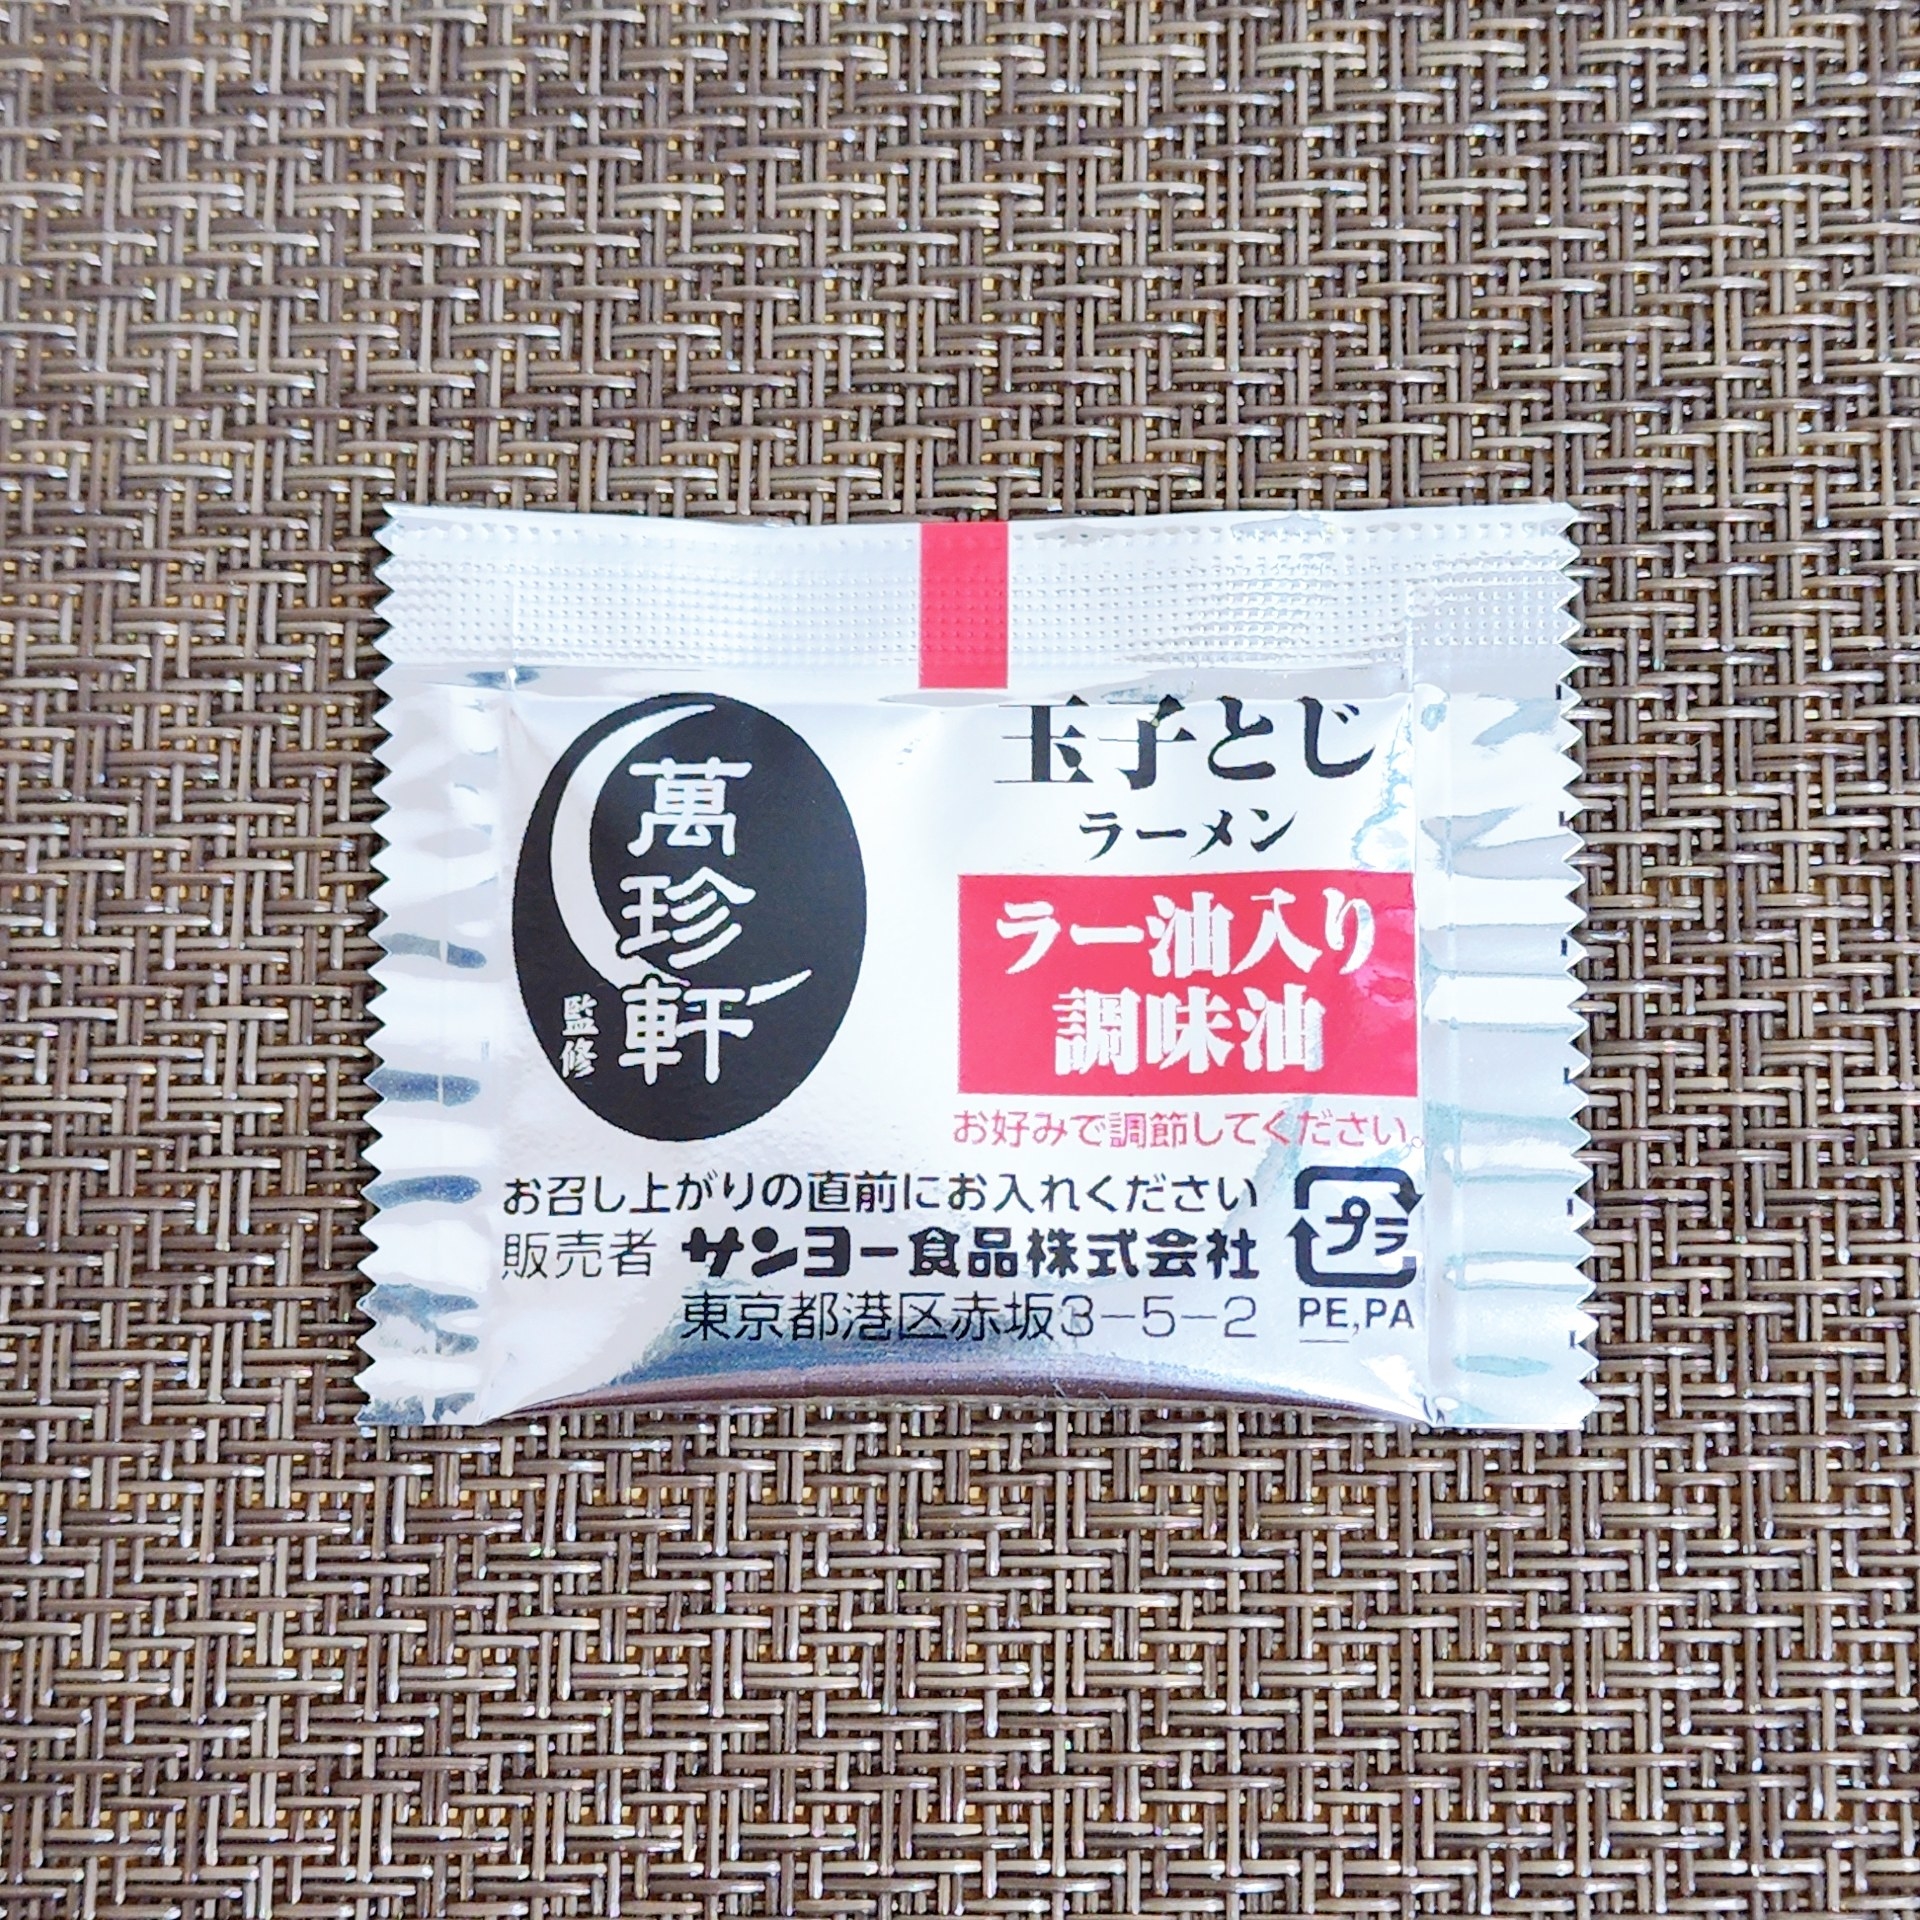 Family Mart（ファミリーマート）のオススメカップ麺「萬珍軒監修 玉子とじラーメン」